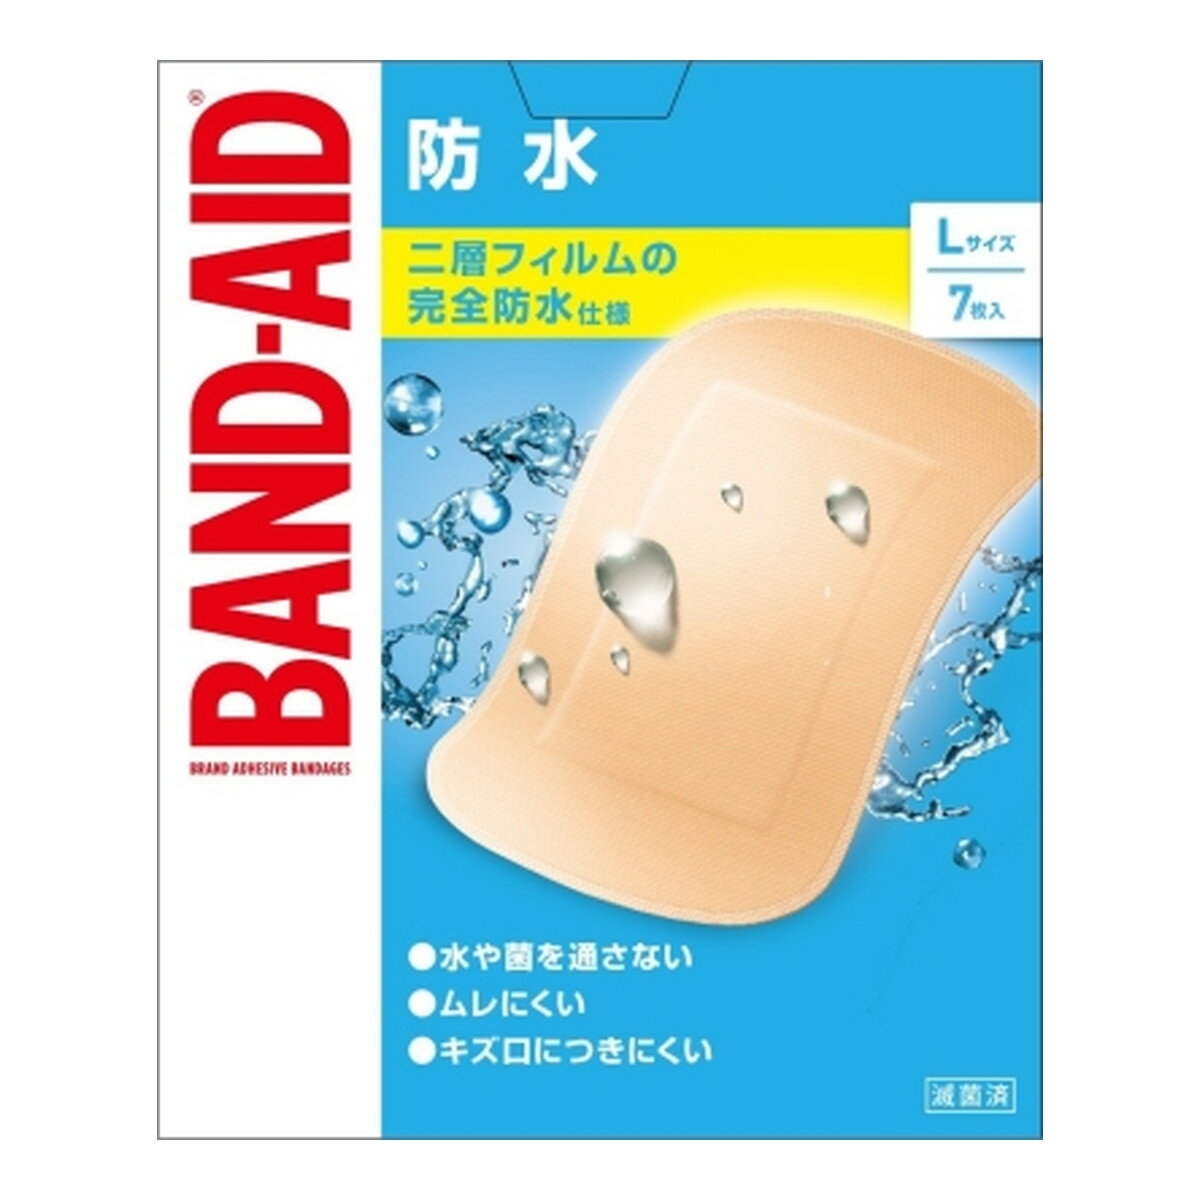 【送料込】 BAND-AID バンドエイド 防水 Lサイズ 7枚入 1個